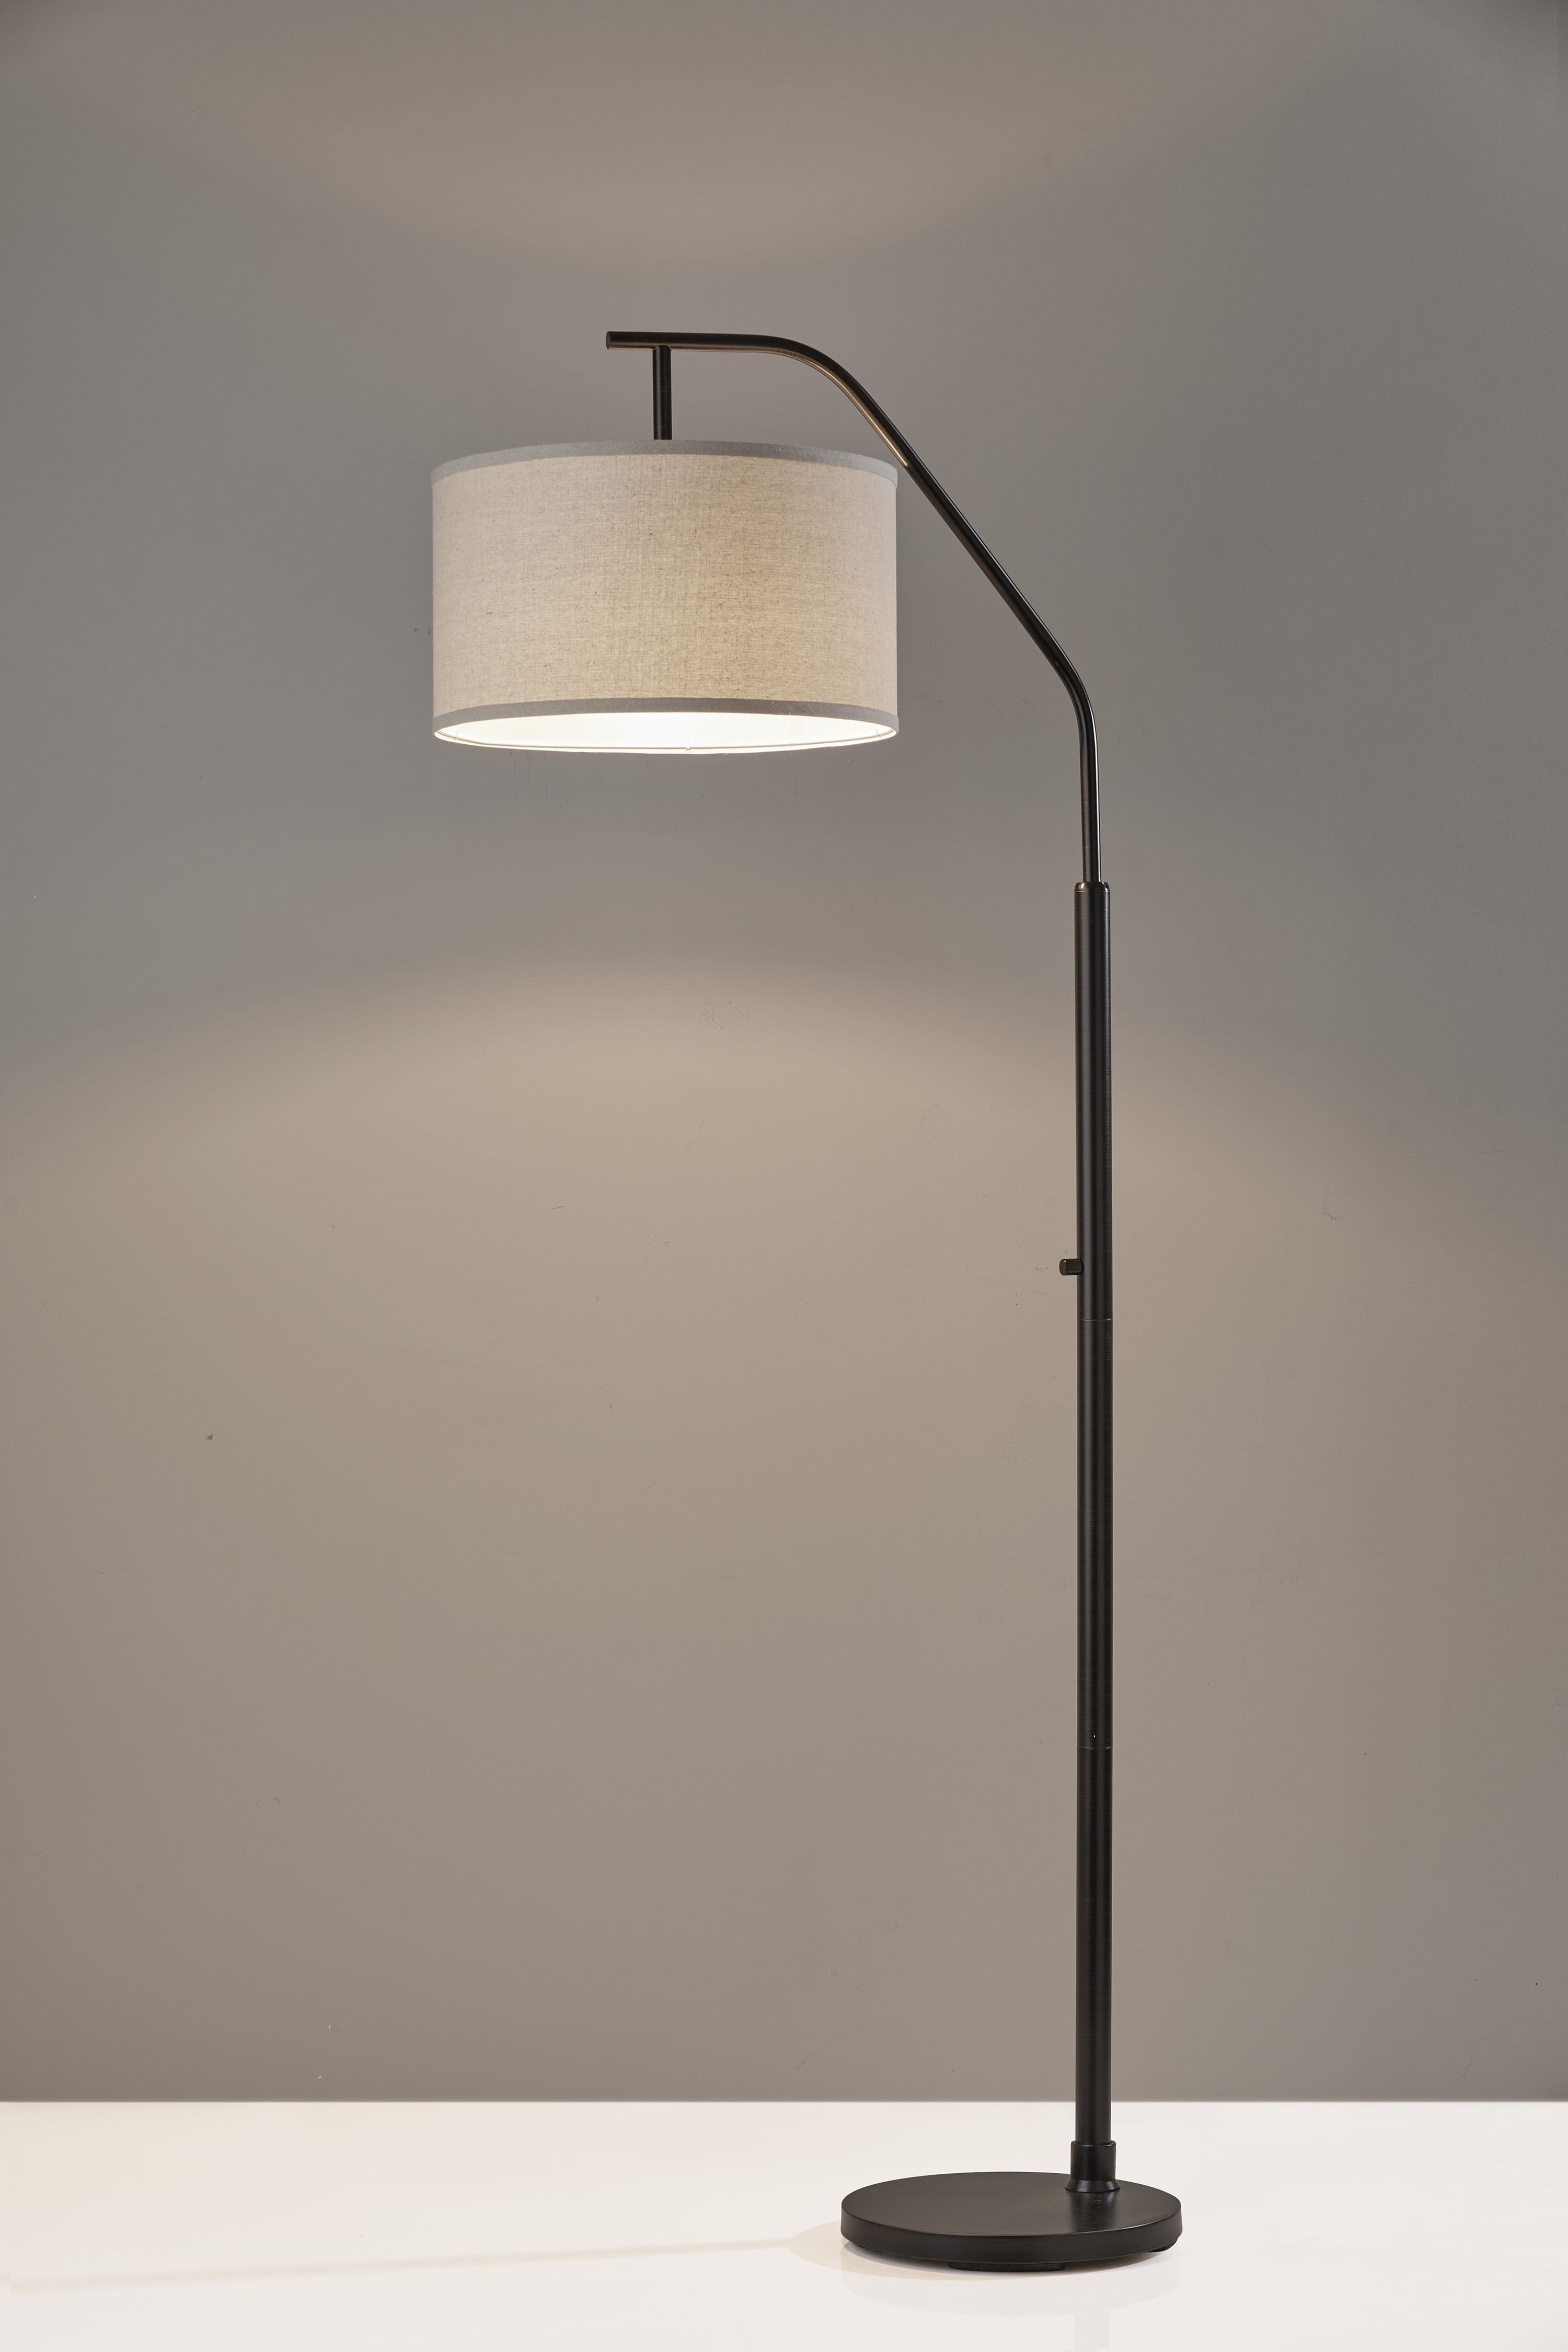 House of Troy K130-GR Kirby Contemporary Gray LED Floor Lamp Light -  HOT-K130-GR